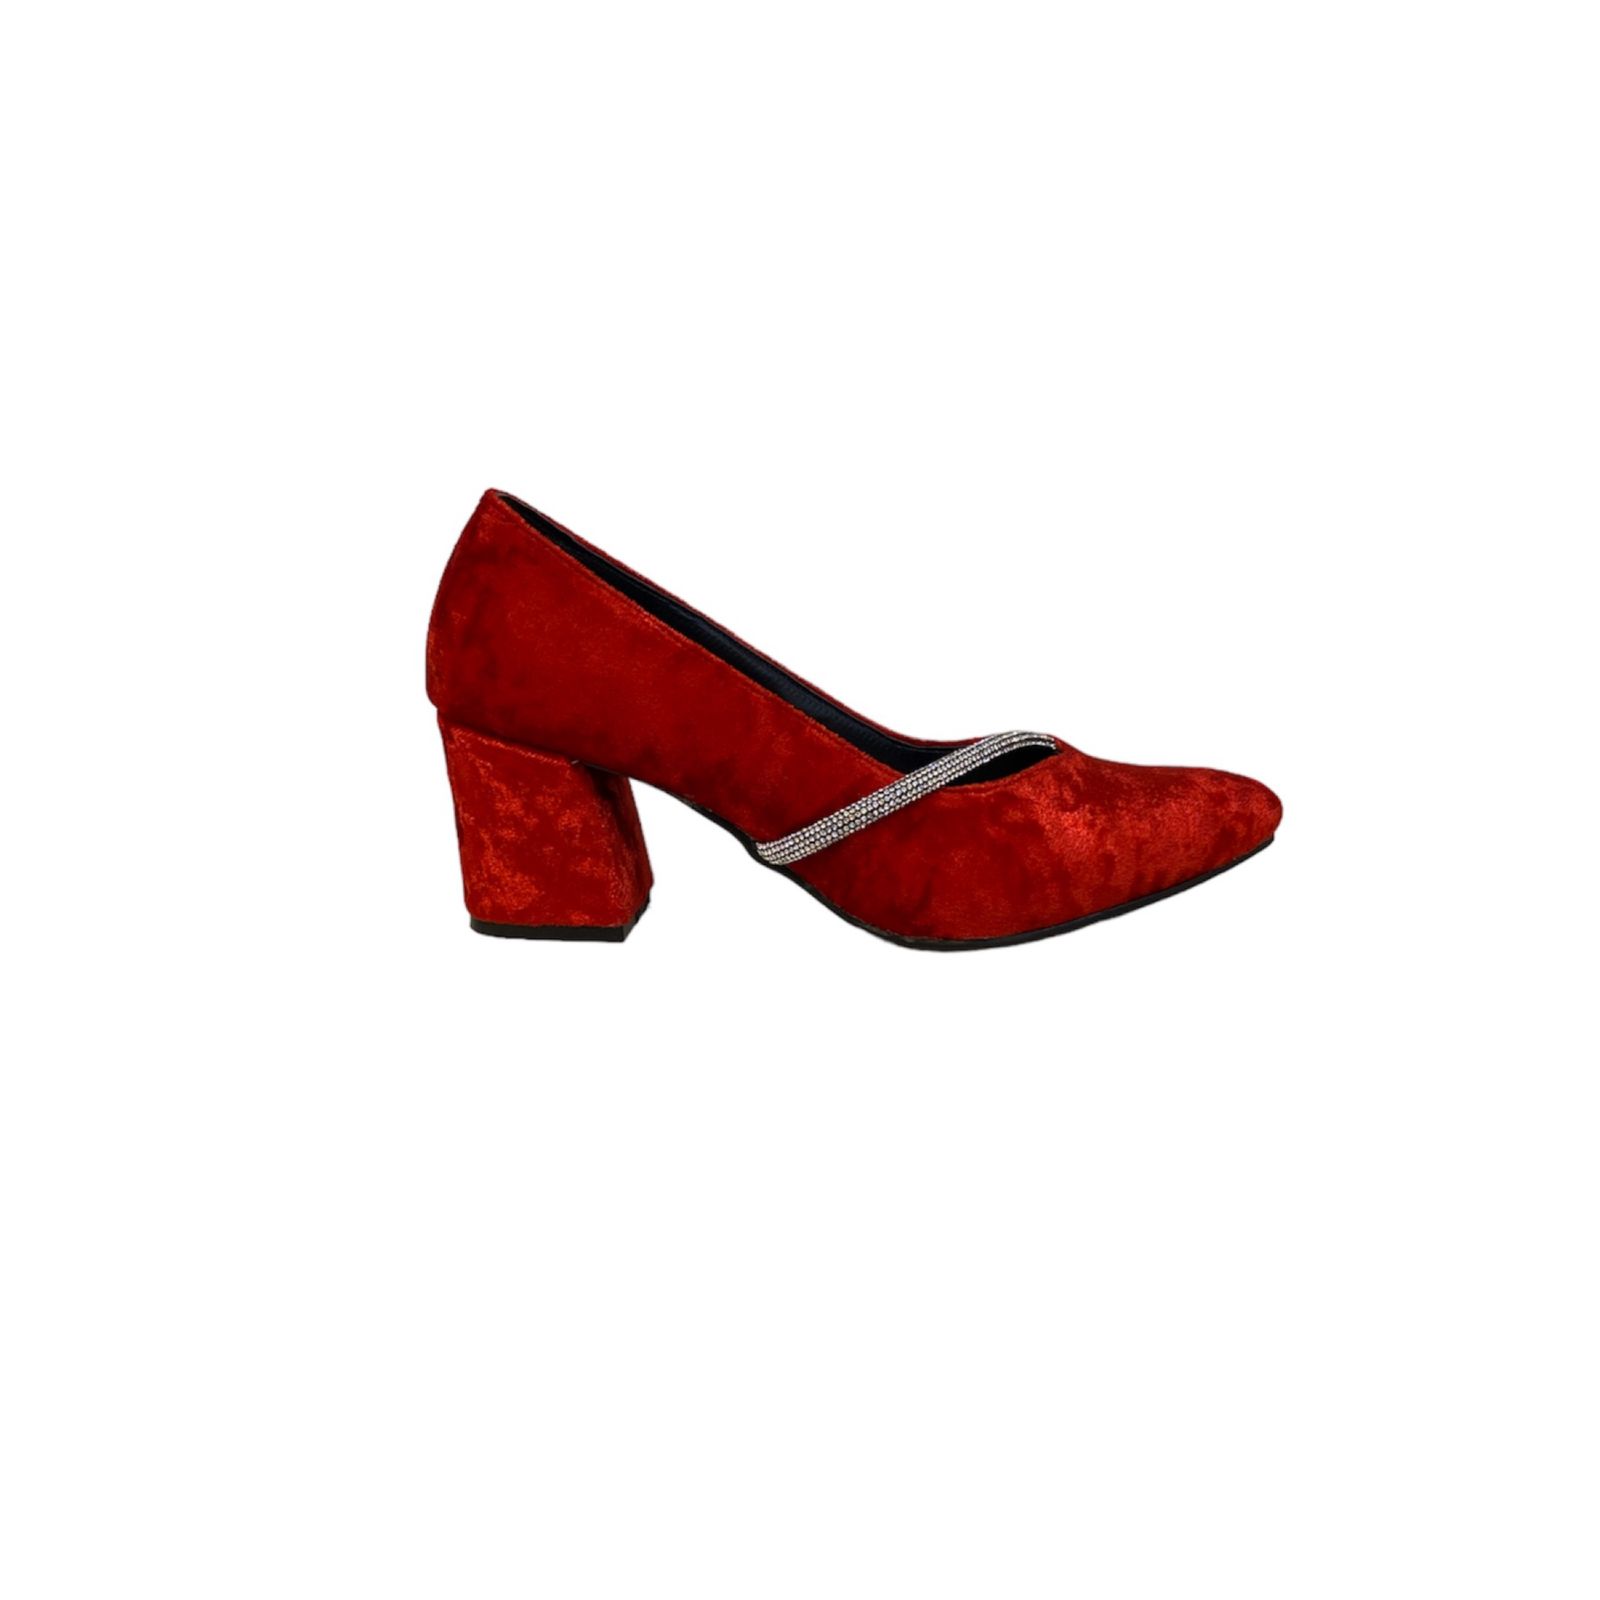 کفش زنانه مدل زیبا مخملی رنگ قرمز -  - 4